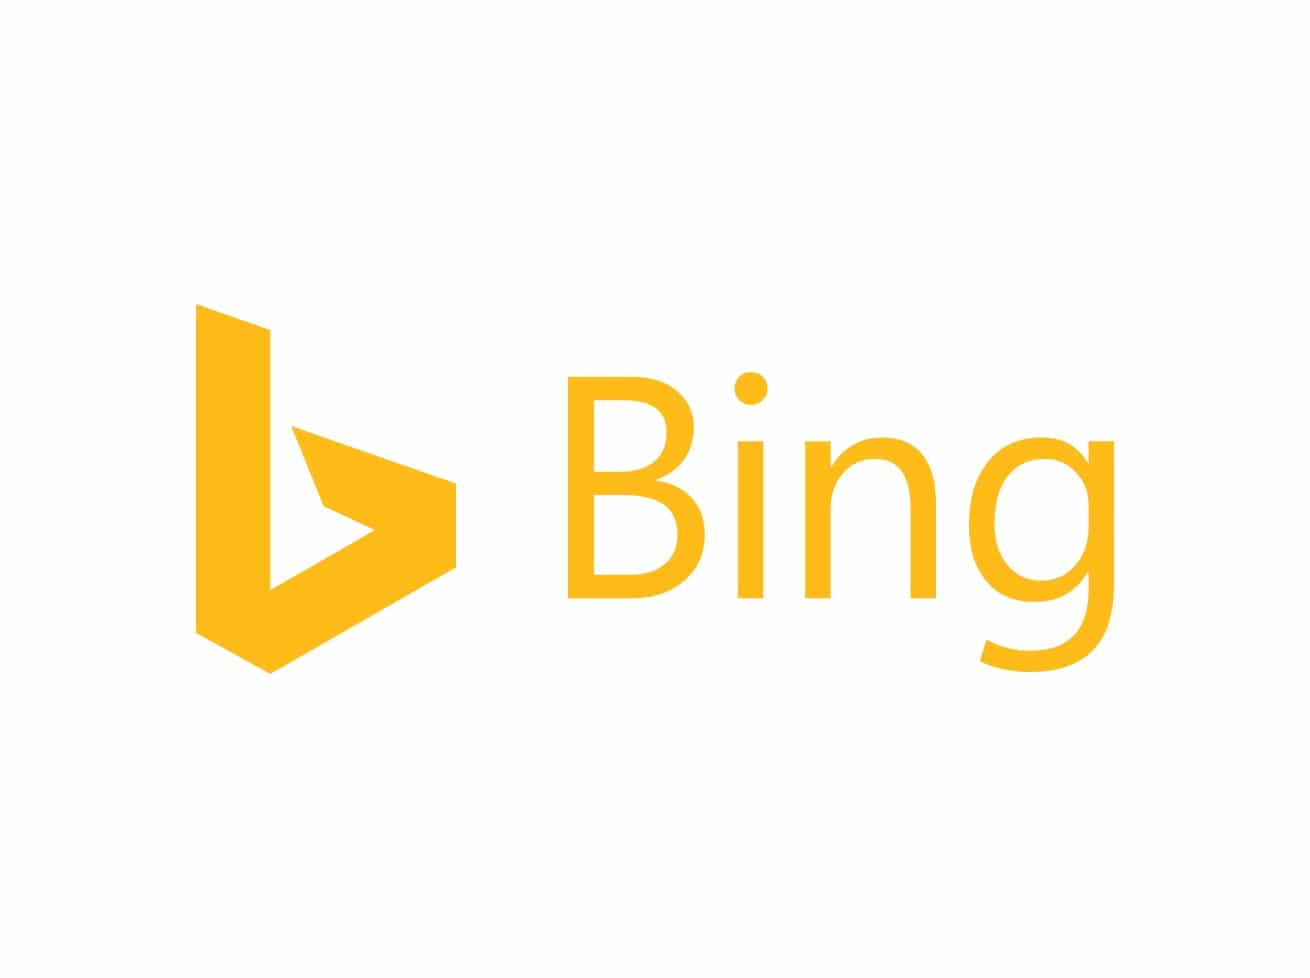 Microsoft-Bing Advertising